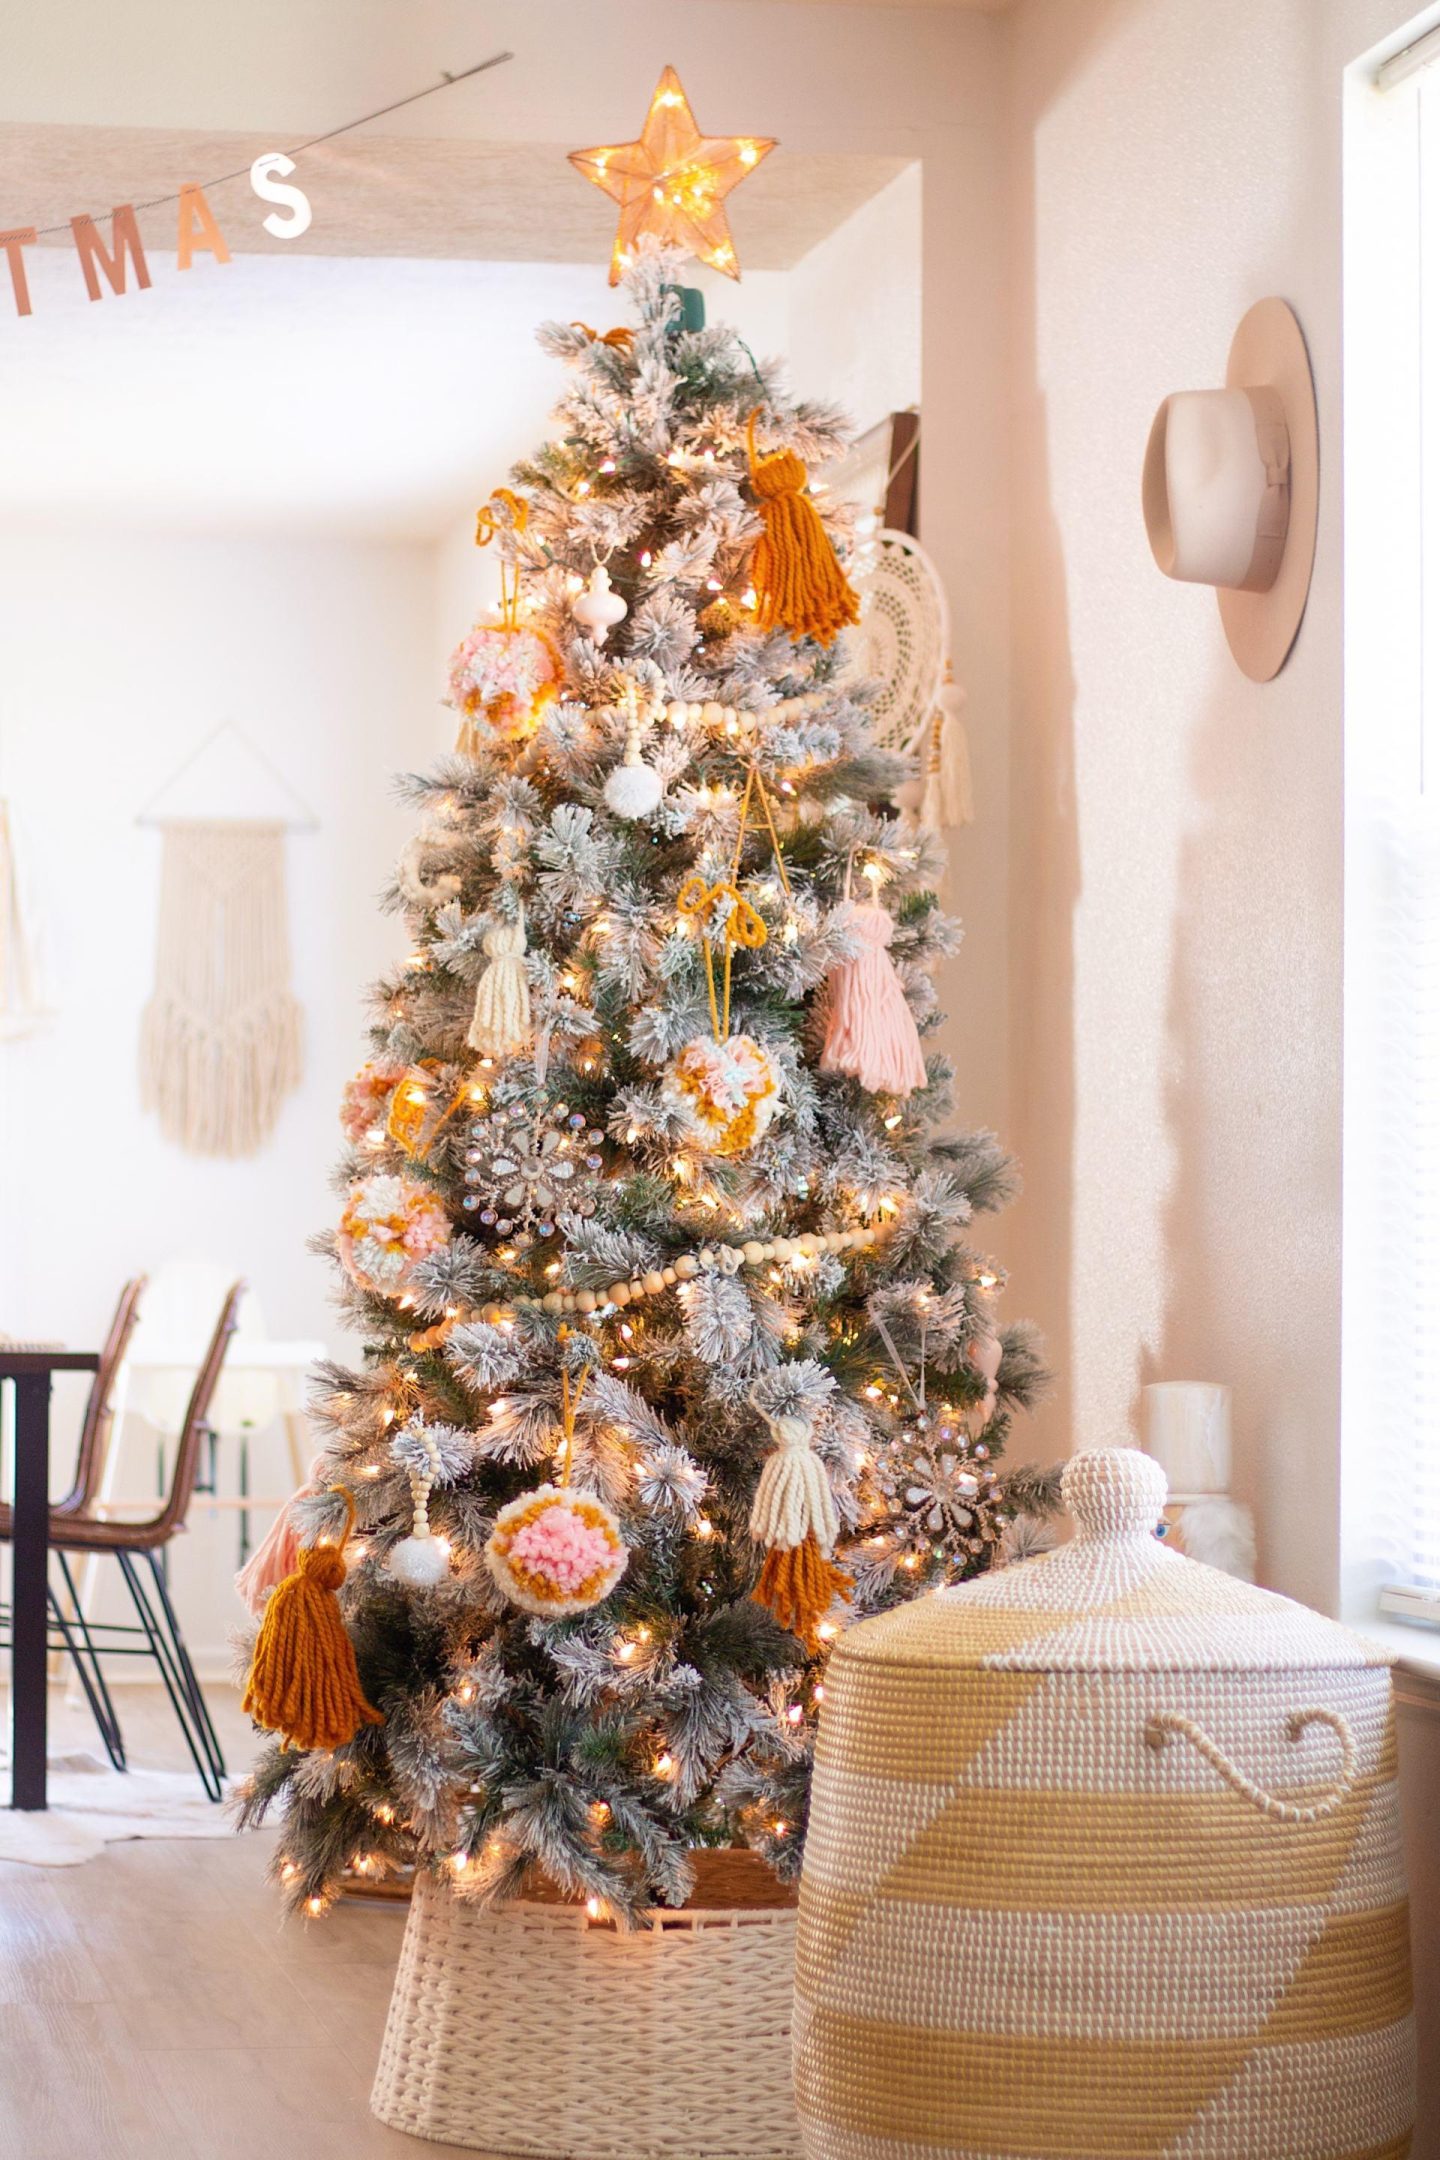 DIY Pom Pom Christmas Ornaments